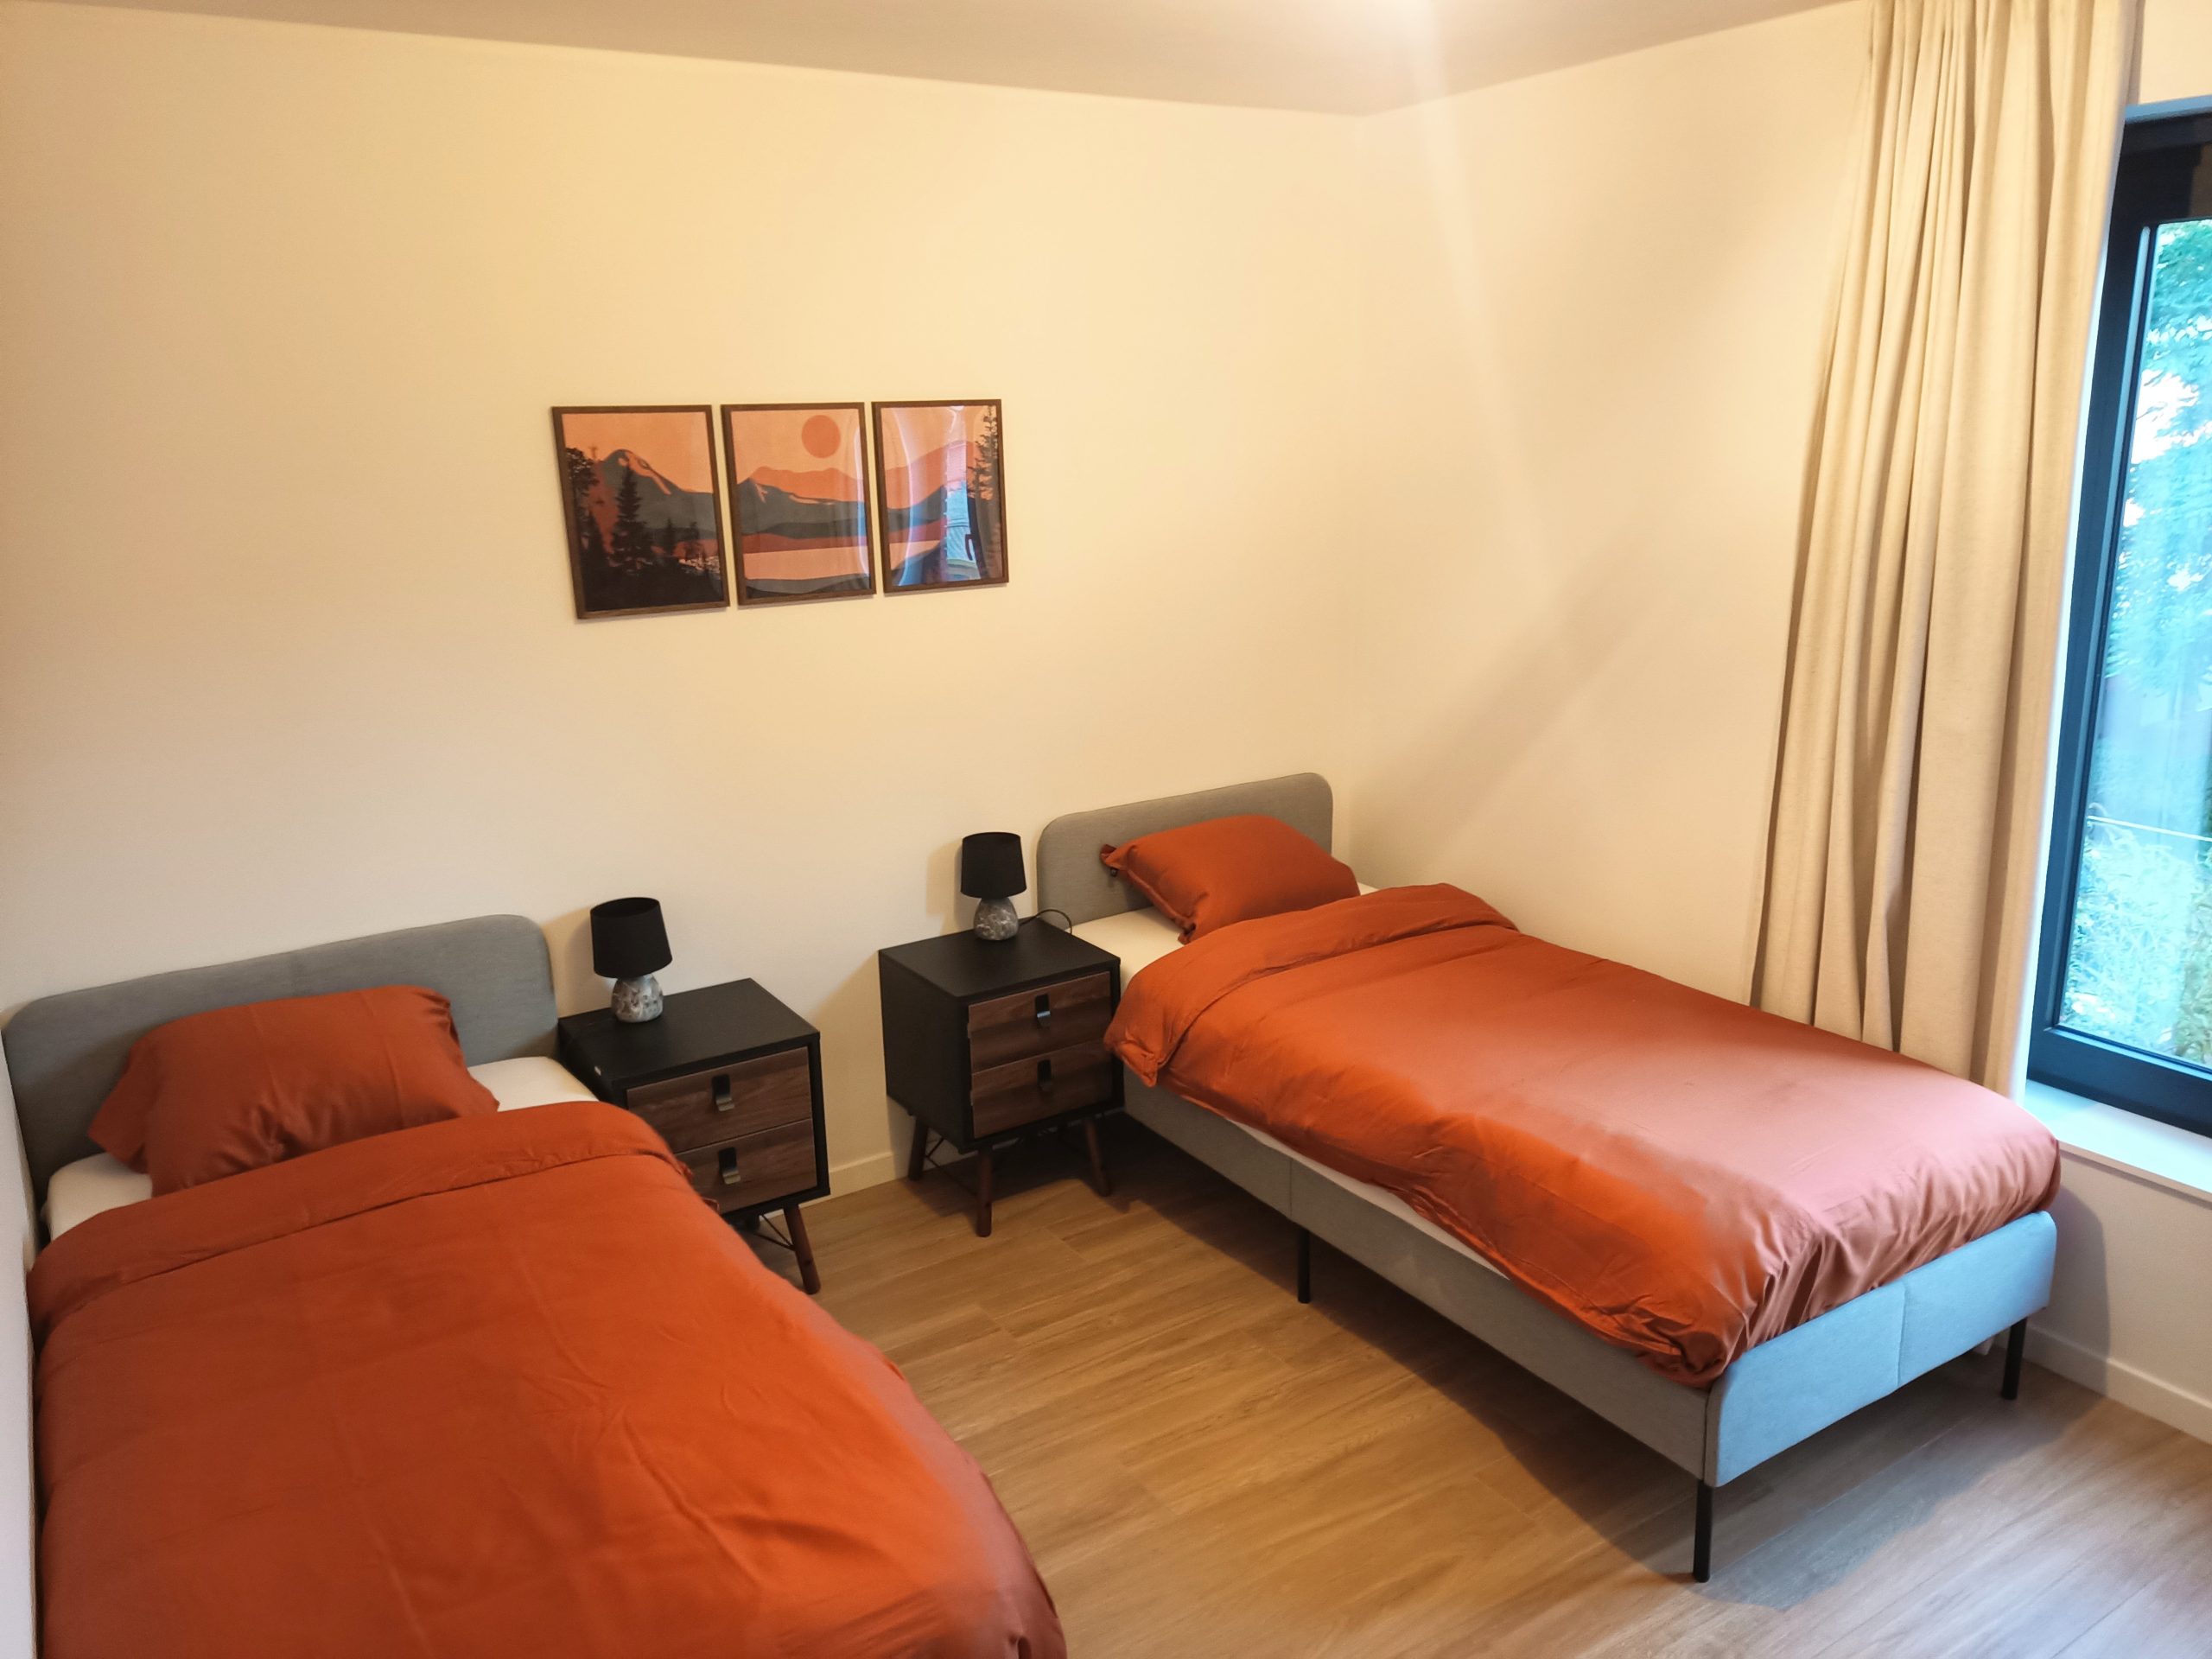 Salvatore - 2 Bedrooms apartment for rent in Ghent bedroom 5